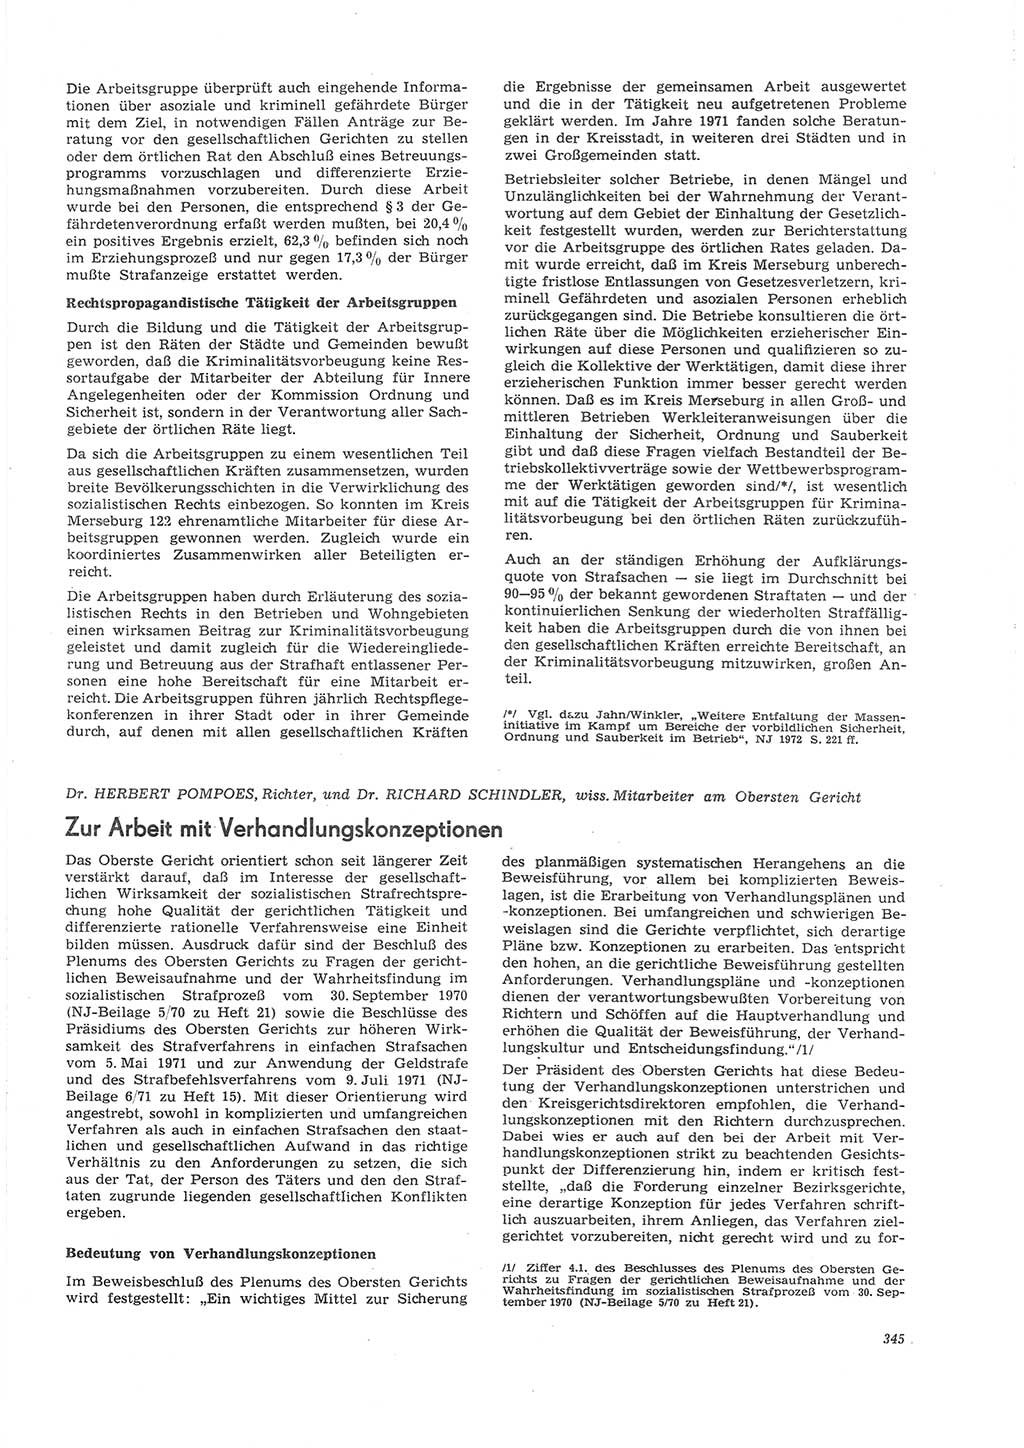 Neue Justiz (NJ), Zeitschrift für Recht und Rechtswissenschaft [Deutsche Demokratische Republik (DDR)], 26. Jahrgang 1972, Seite 345 (NJ DDR 1972, S. 345)